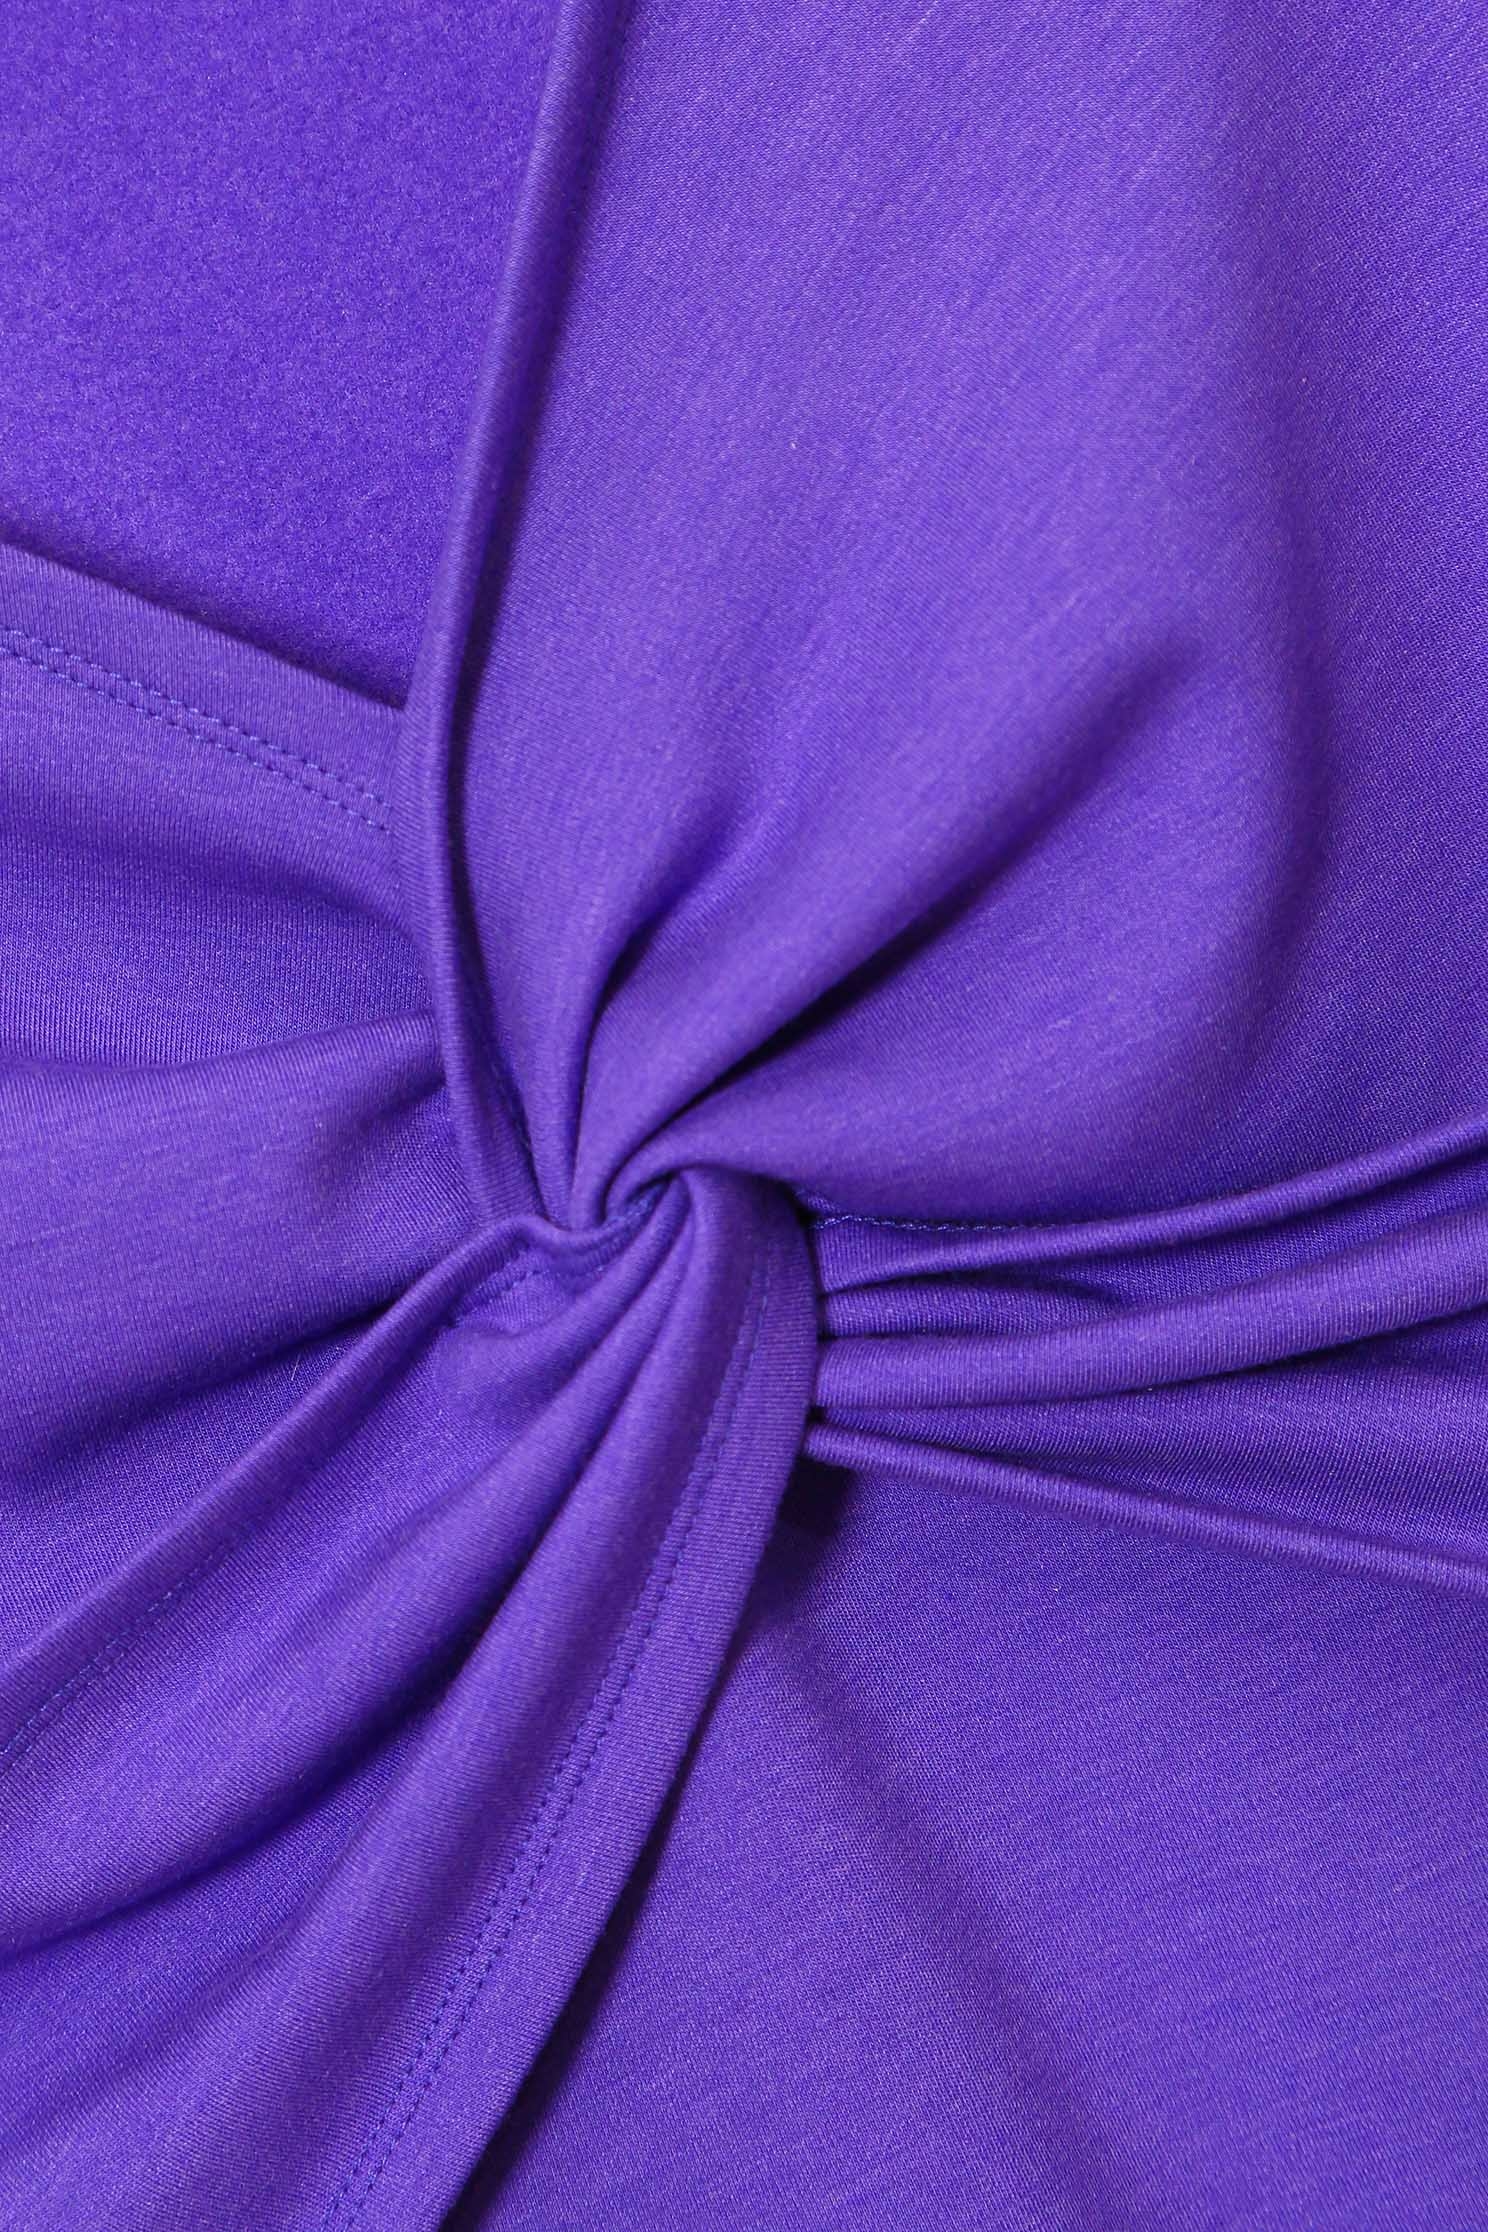 蝴蝶蘭紫單品上衣蝴蝶蘭紫單品上衣,上衣,秋冬穿搭,約會特輯